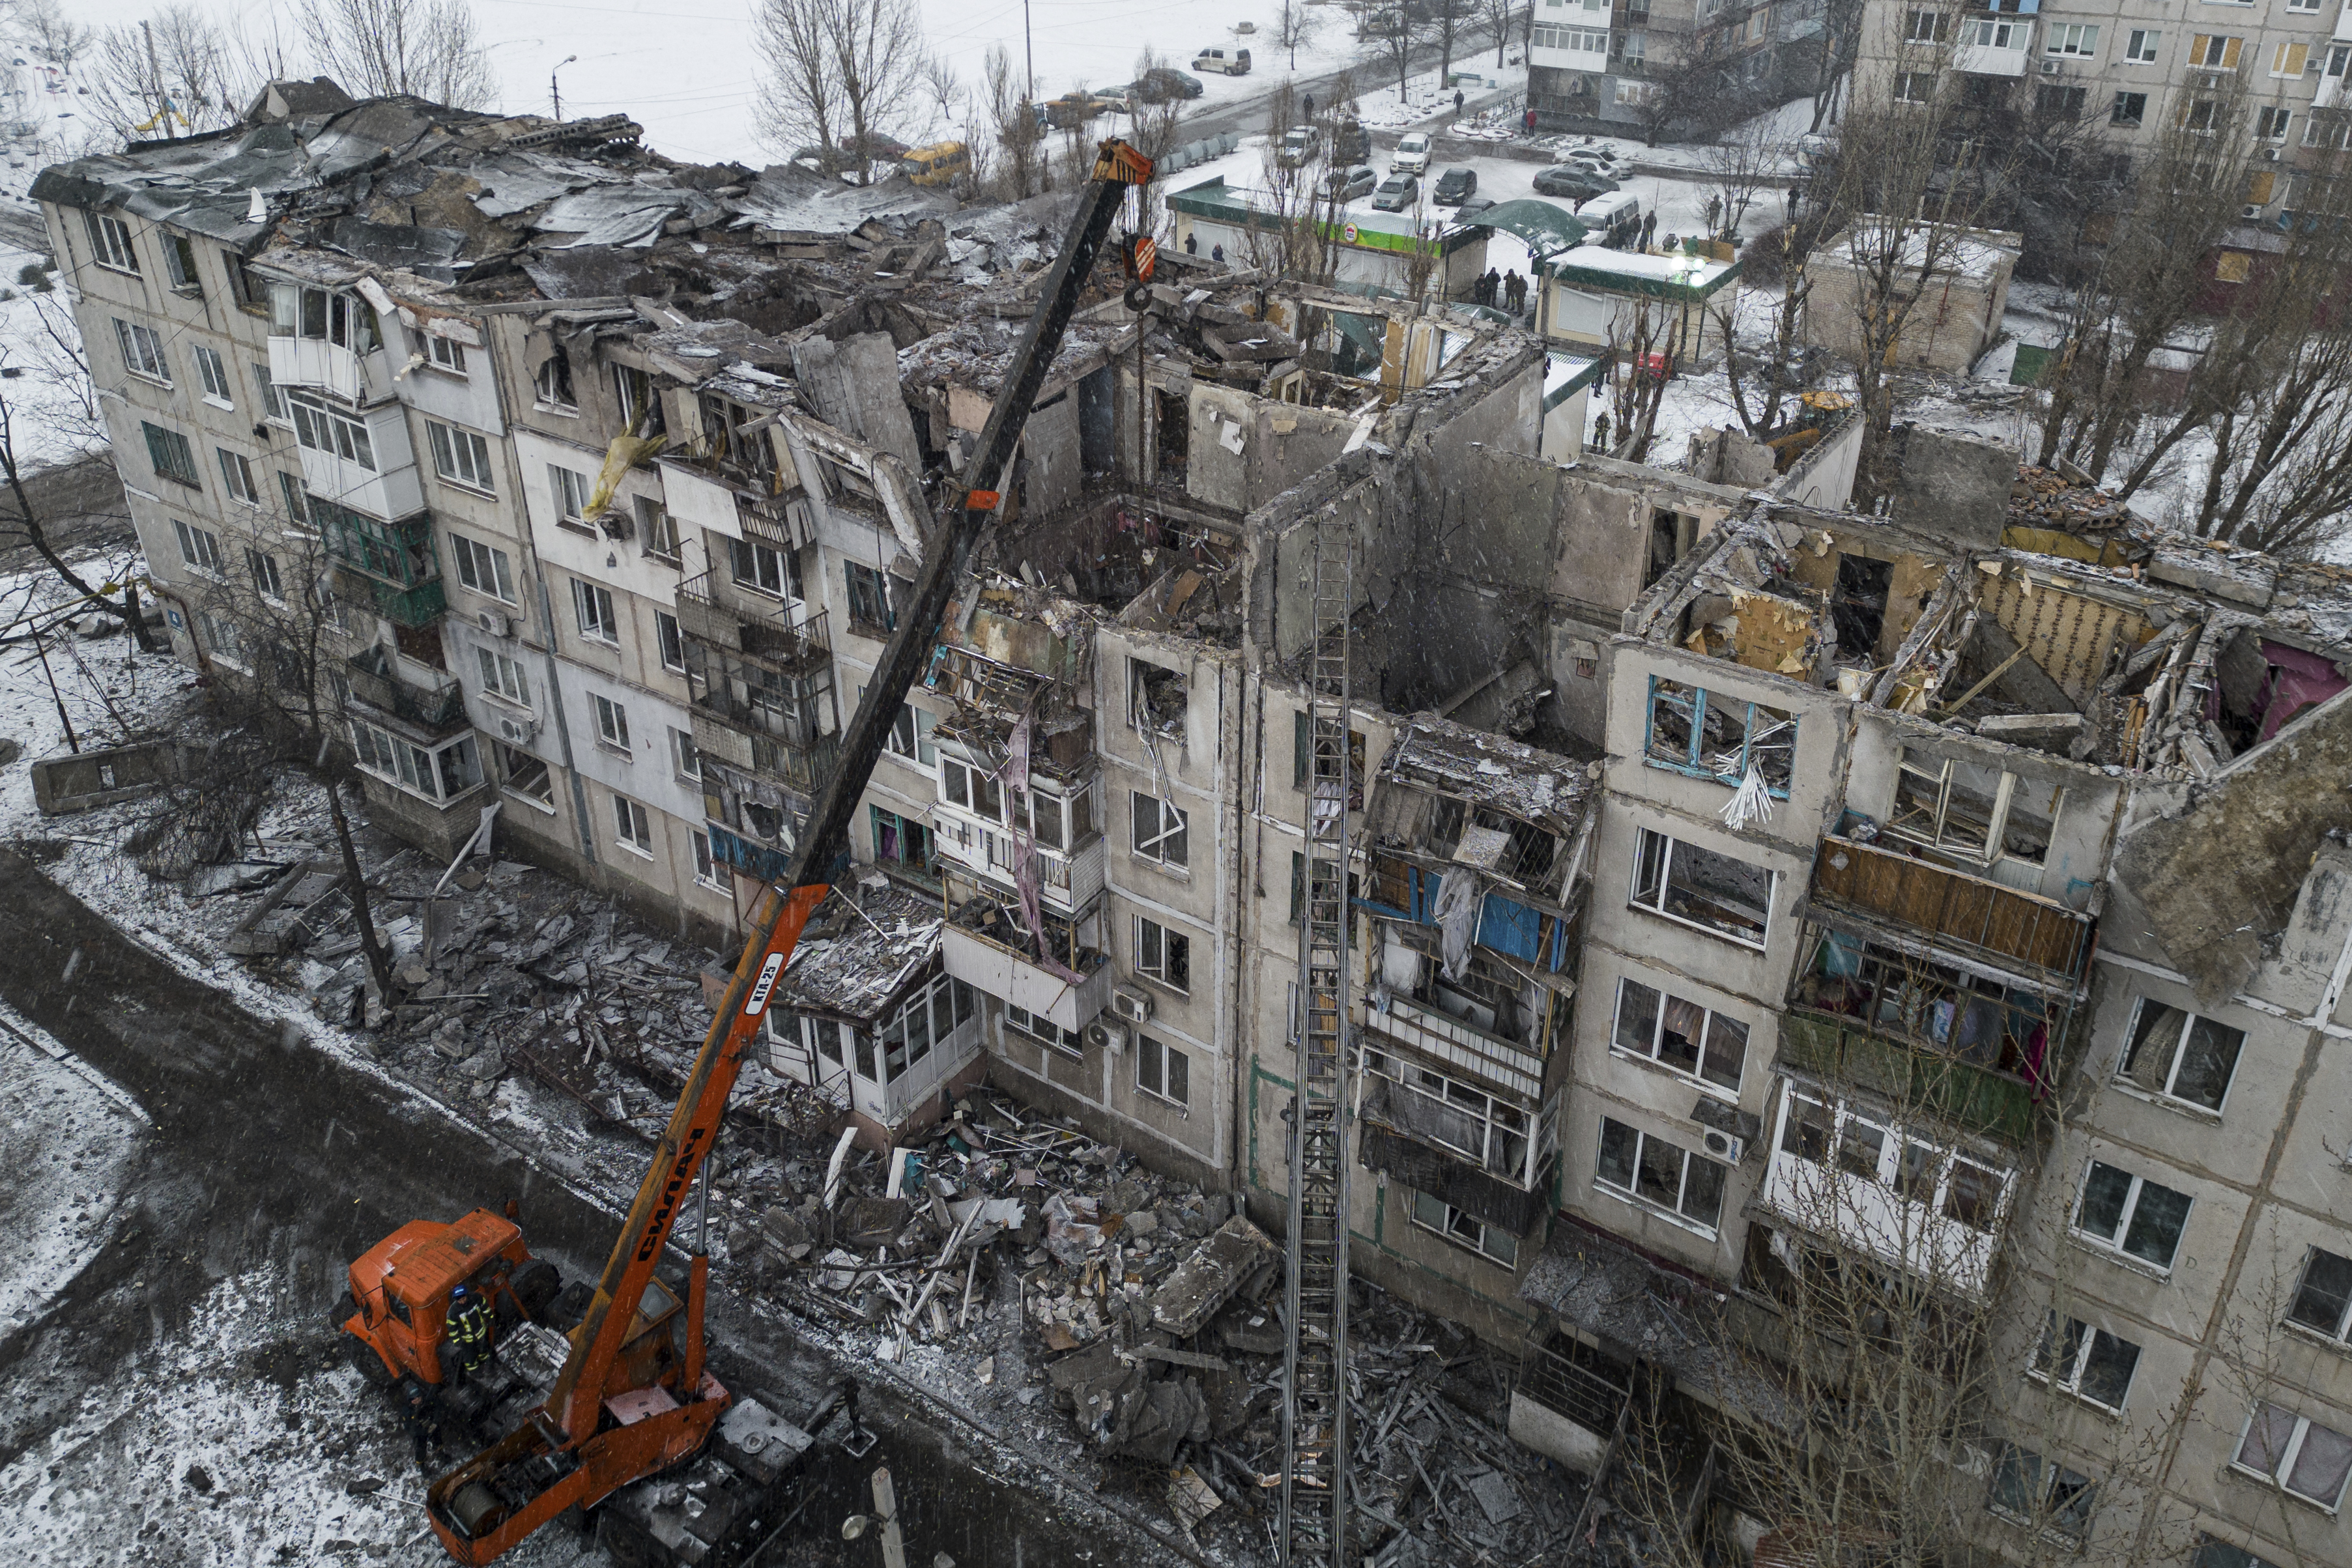 Foto de archivo: Equipos con maquinaria pesada retiran los escombros de un edificio residencial destruido por un cohete ruso en Pokrovsk, Ucrania, el 15 de febrero de 2023 (AP Foto/Evgeniy Maloletka)